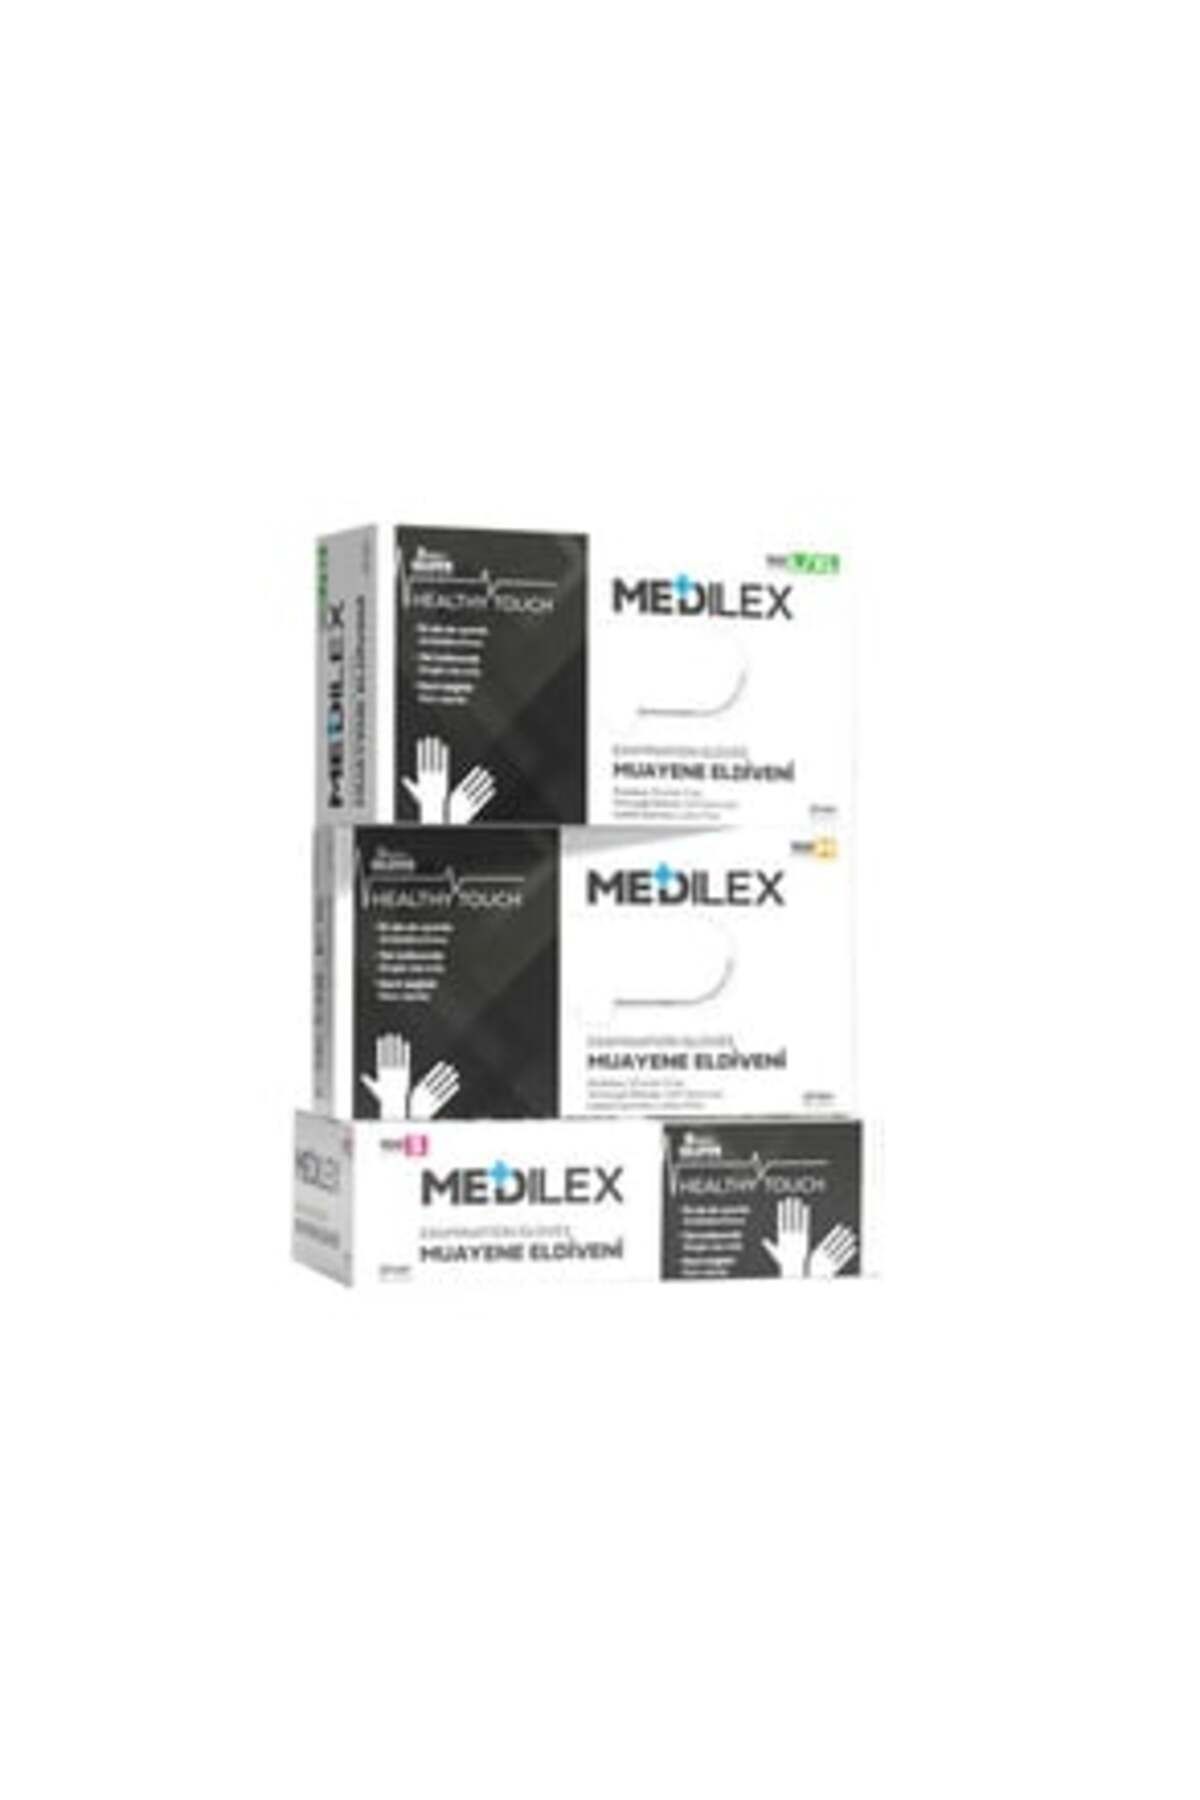 Reflex ( 1 ADET ) Reflex Medilex Pudrasız Muayene Eldiveni Siyah S Beden 100'lü Paket